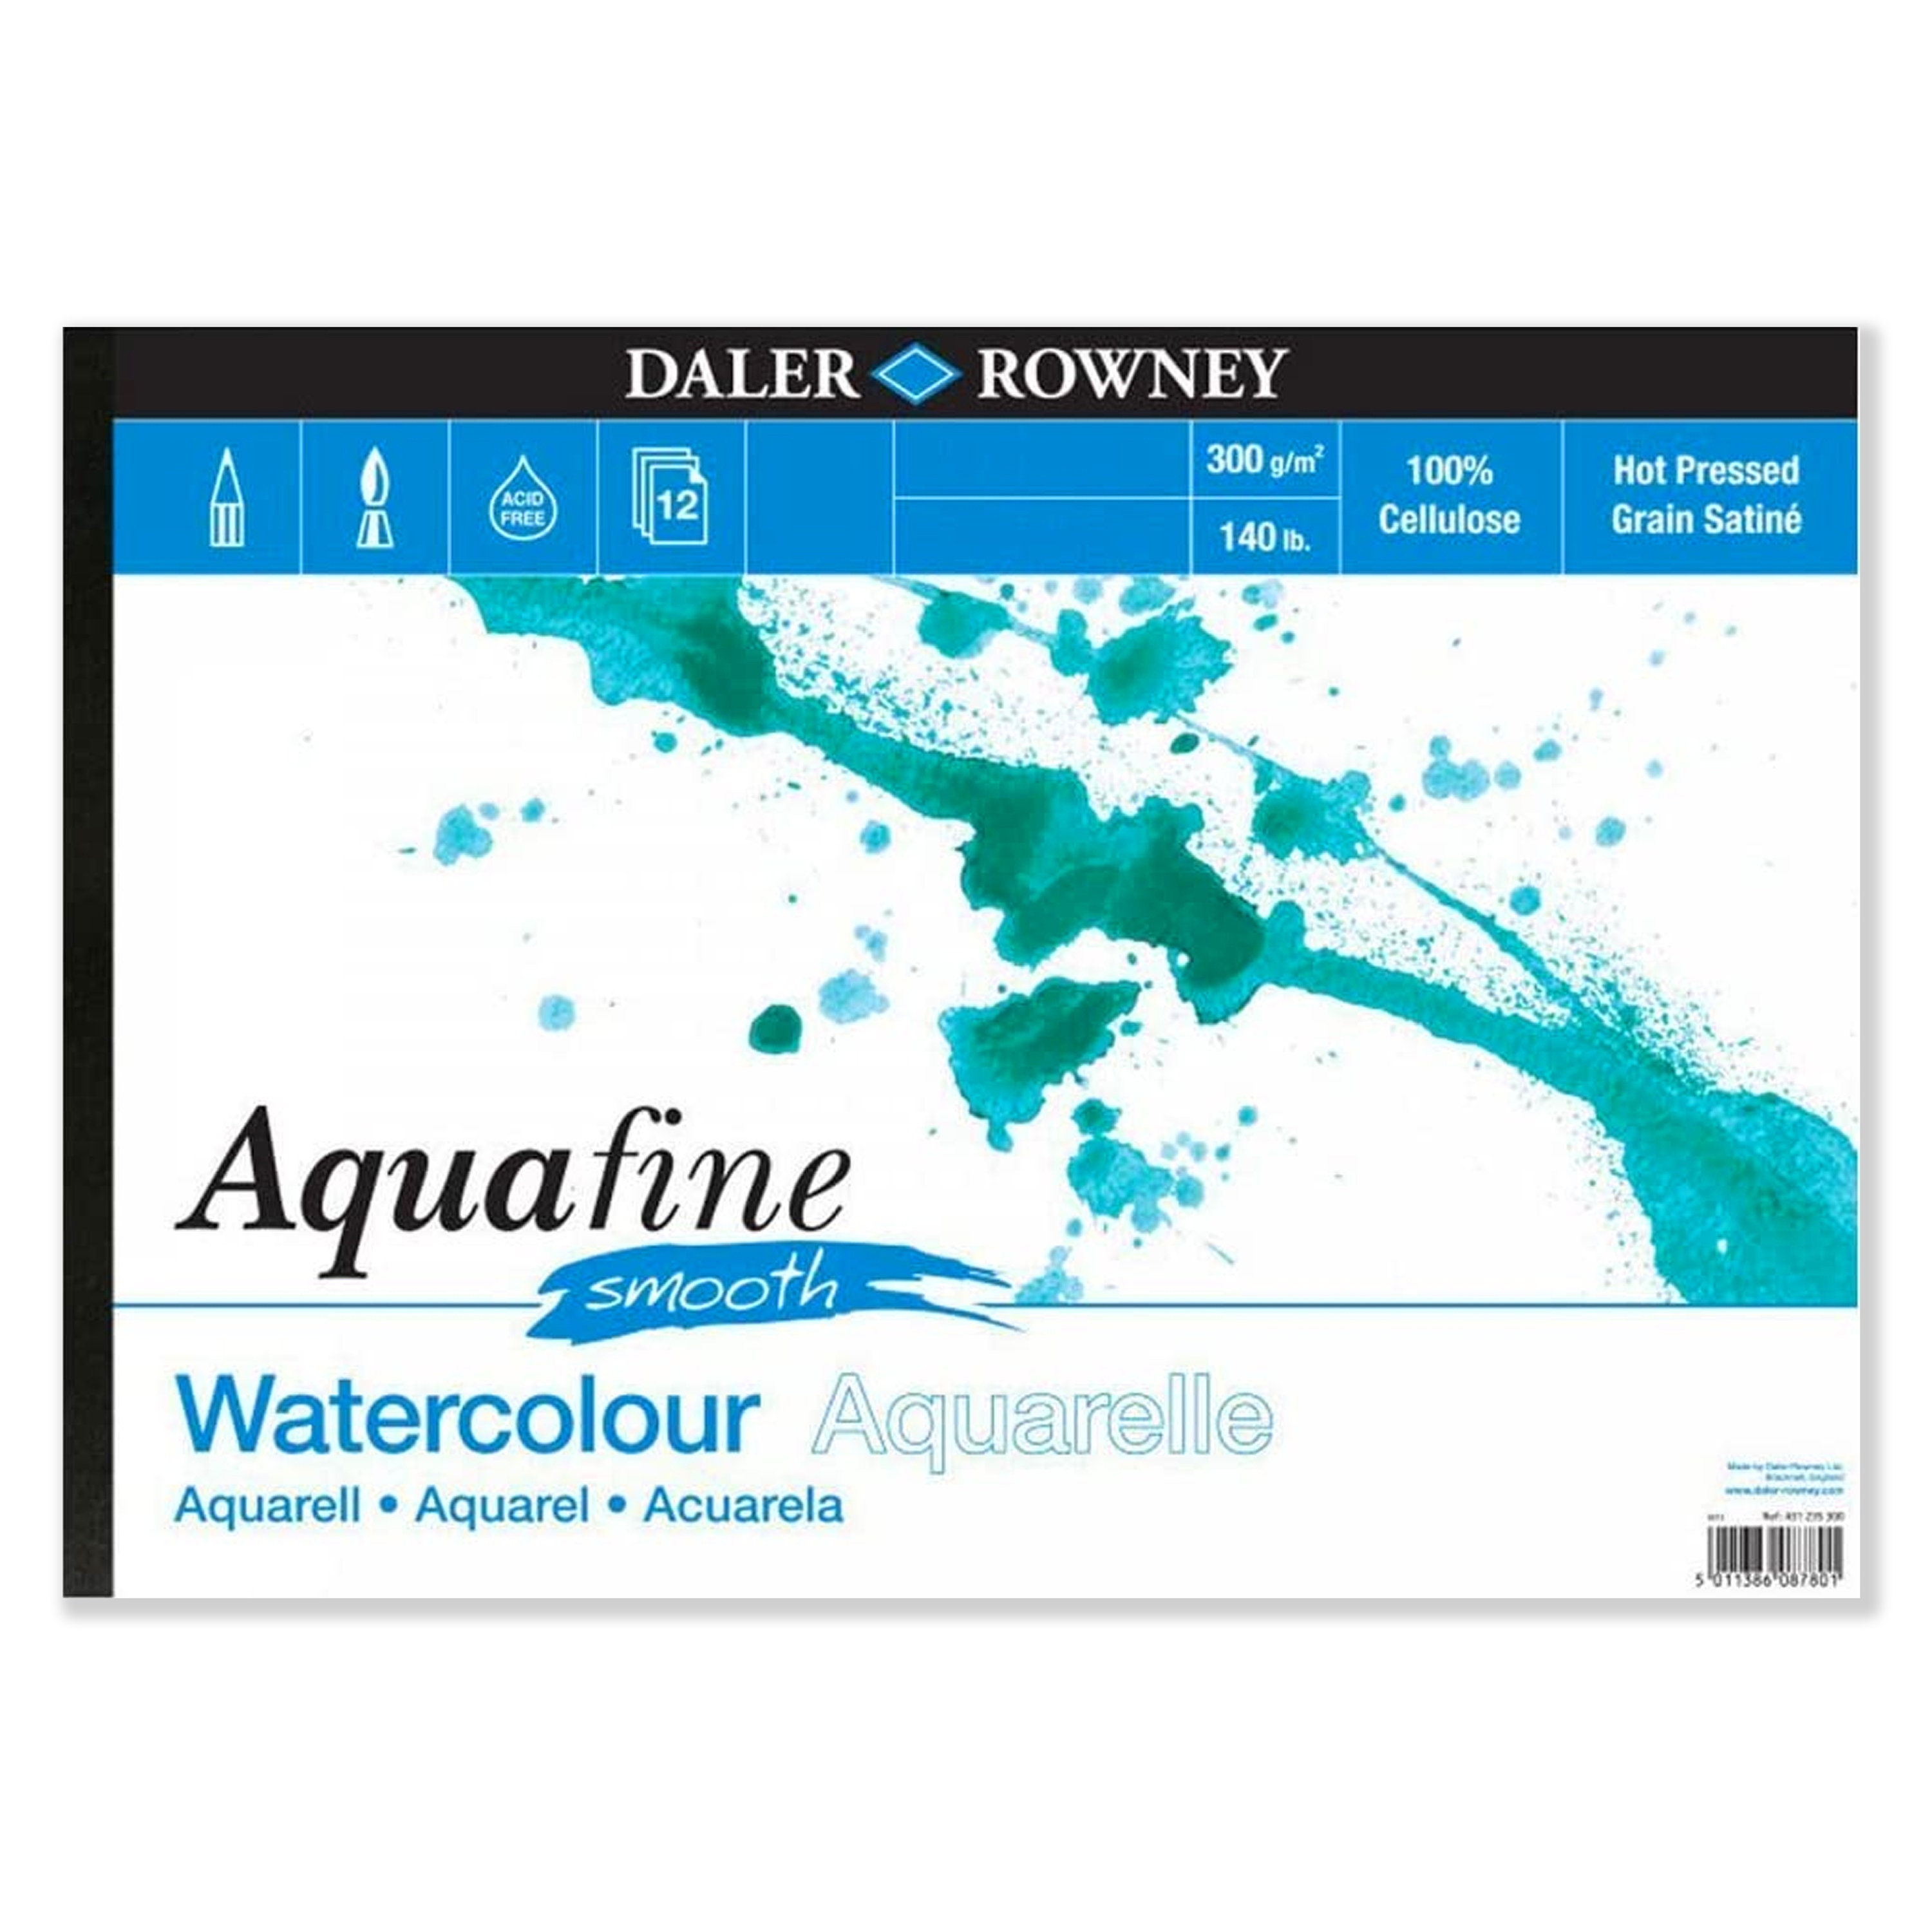 Daler-rowney Aquafine Watercolour Paint 8ml 